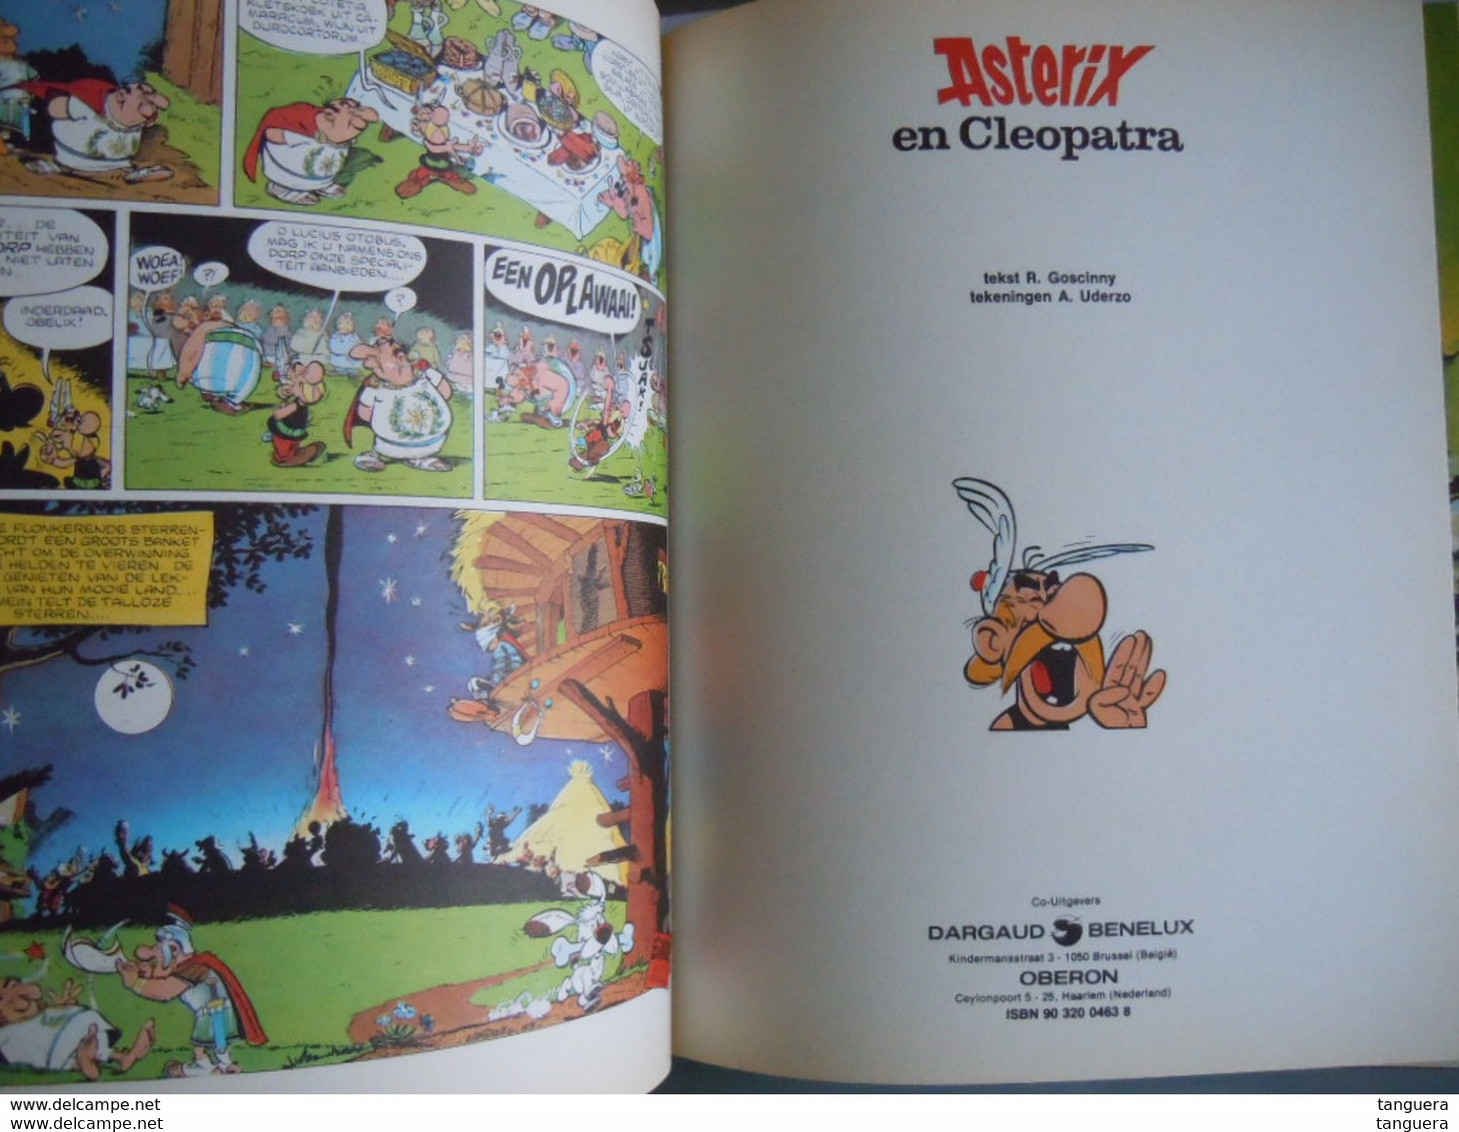 De Avonturen van Asterix de Galliër - bundeling 4 verhalen 1981 Goscinny Uderzo Dargaud Oberon